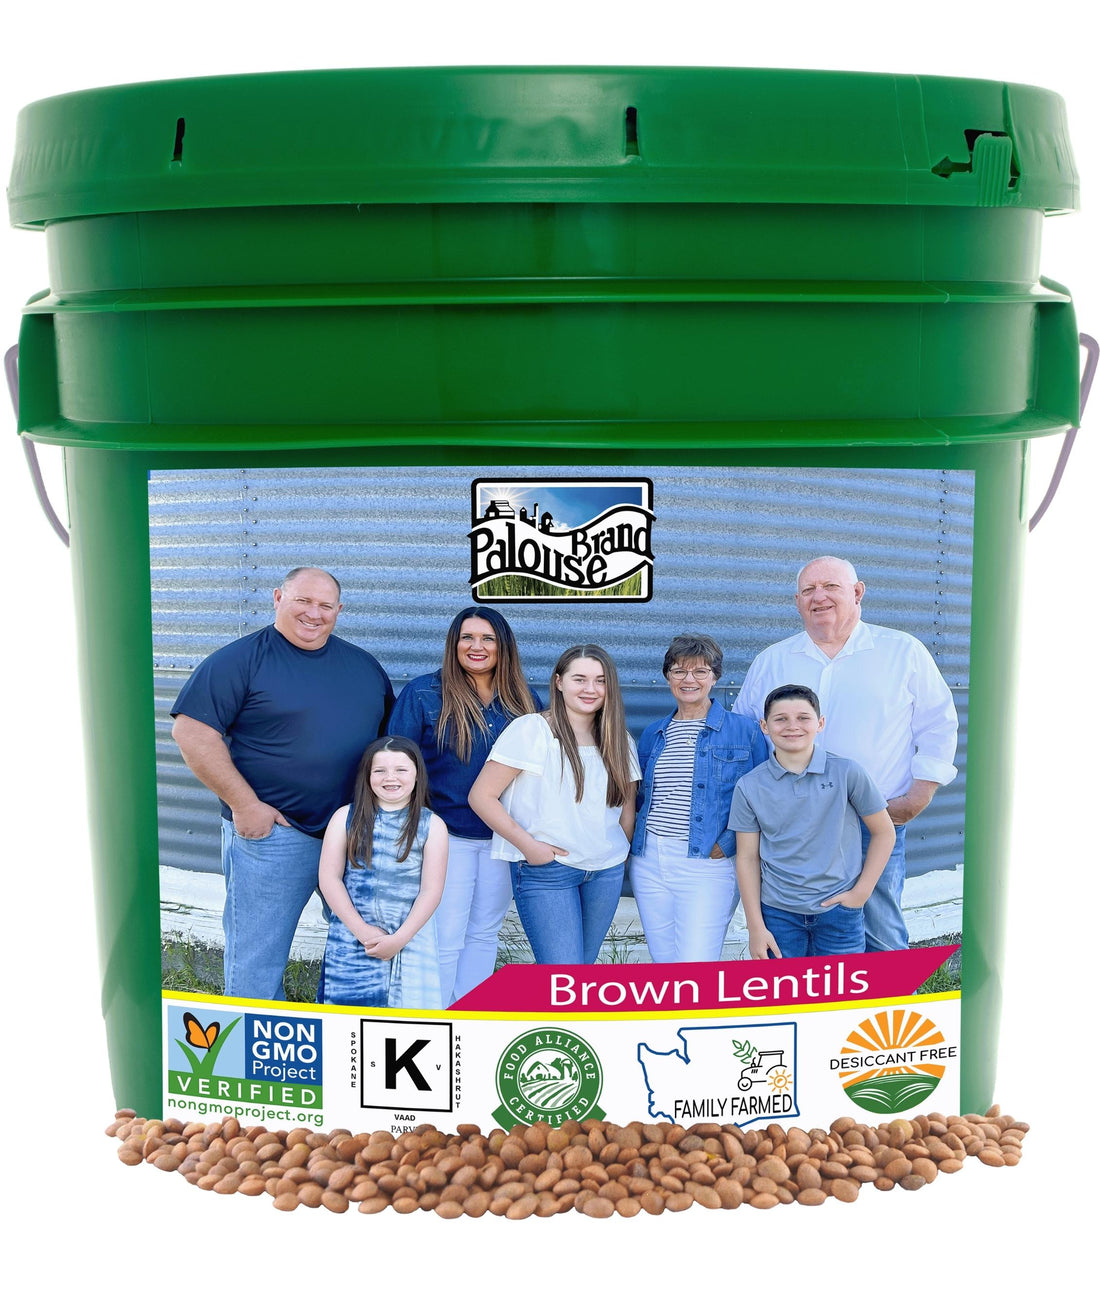 Palouse Brand Brown Lentils, 25 lbs Bucket, Emergency Food Storage